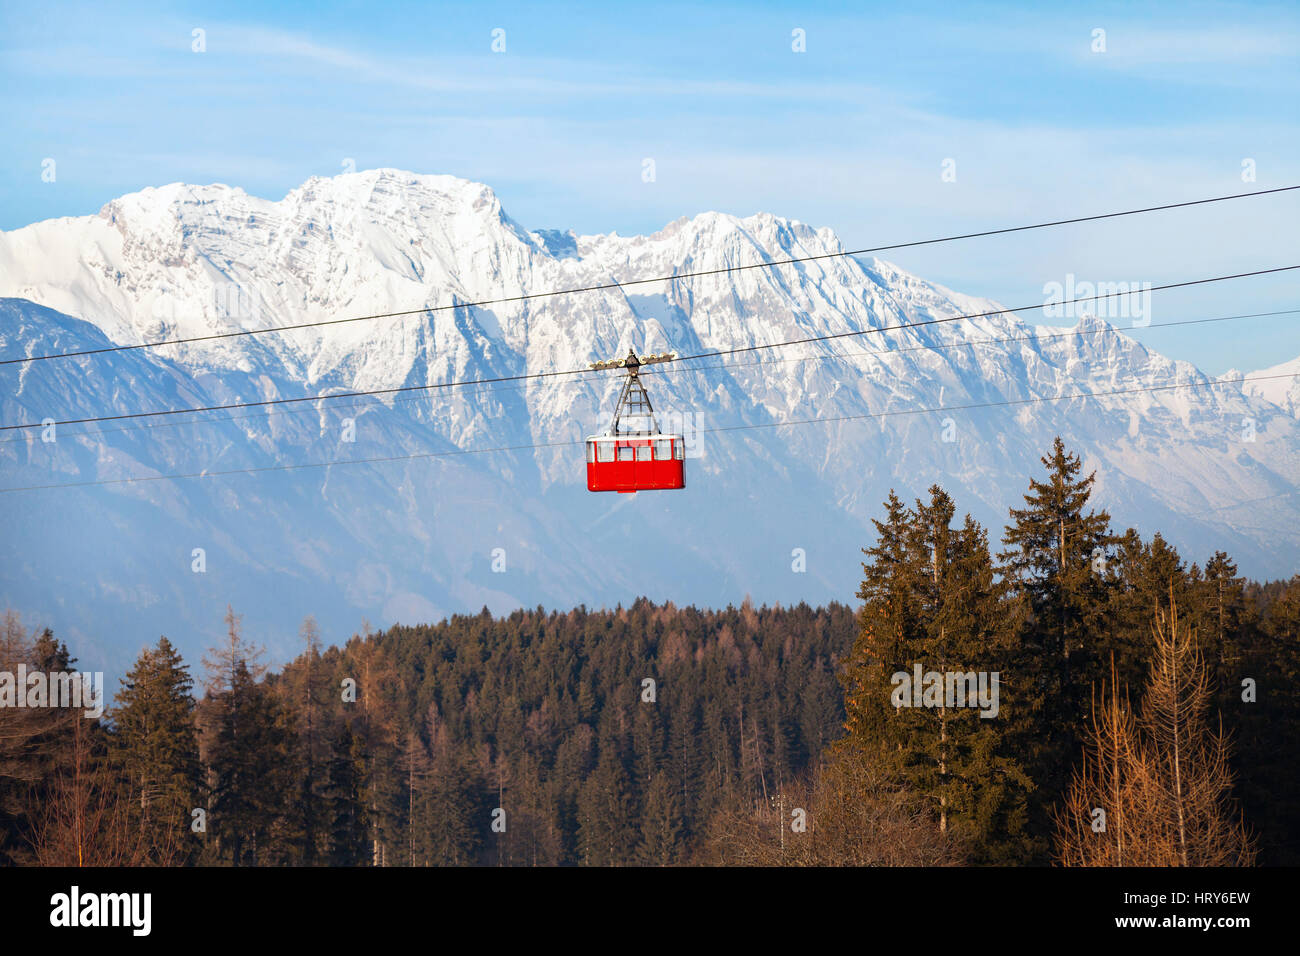 Impianti di risalita nelle Alpi, inverno bellissimo paesaggio di montagna del Patscherkofel, Igls, Austria Foto Stock